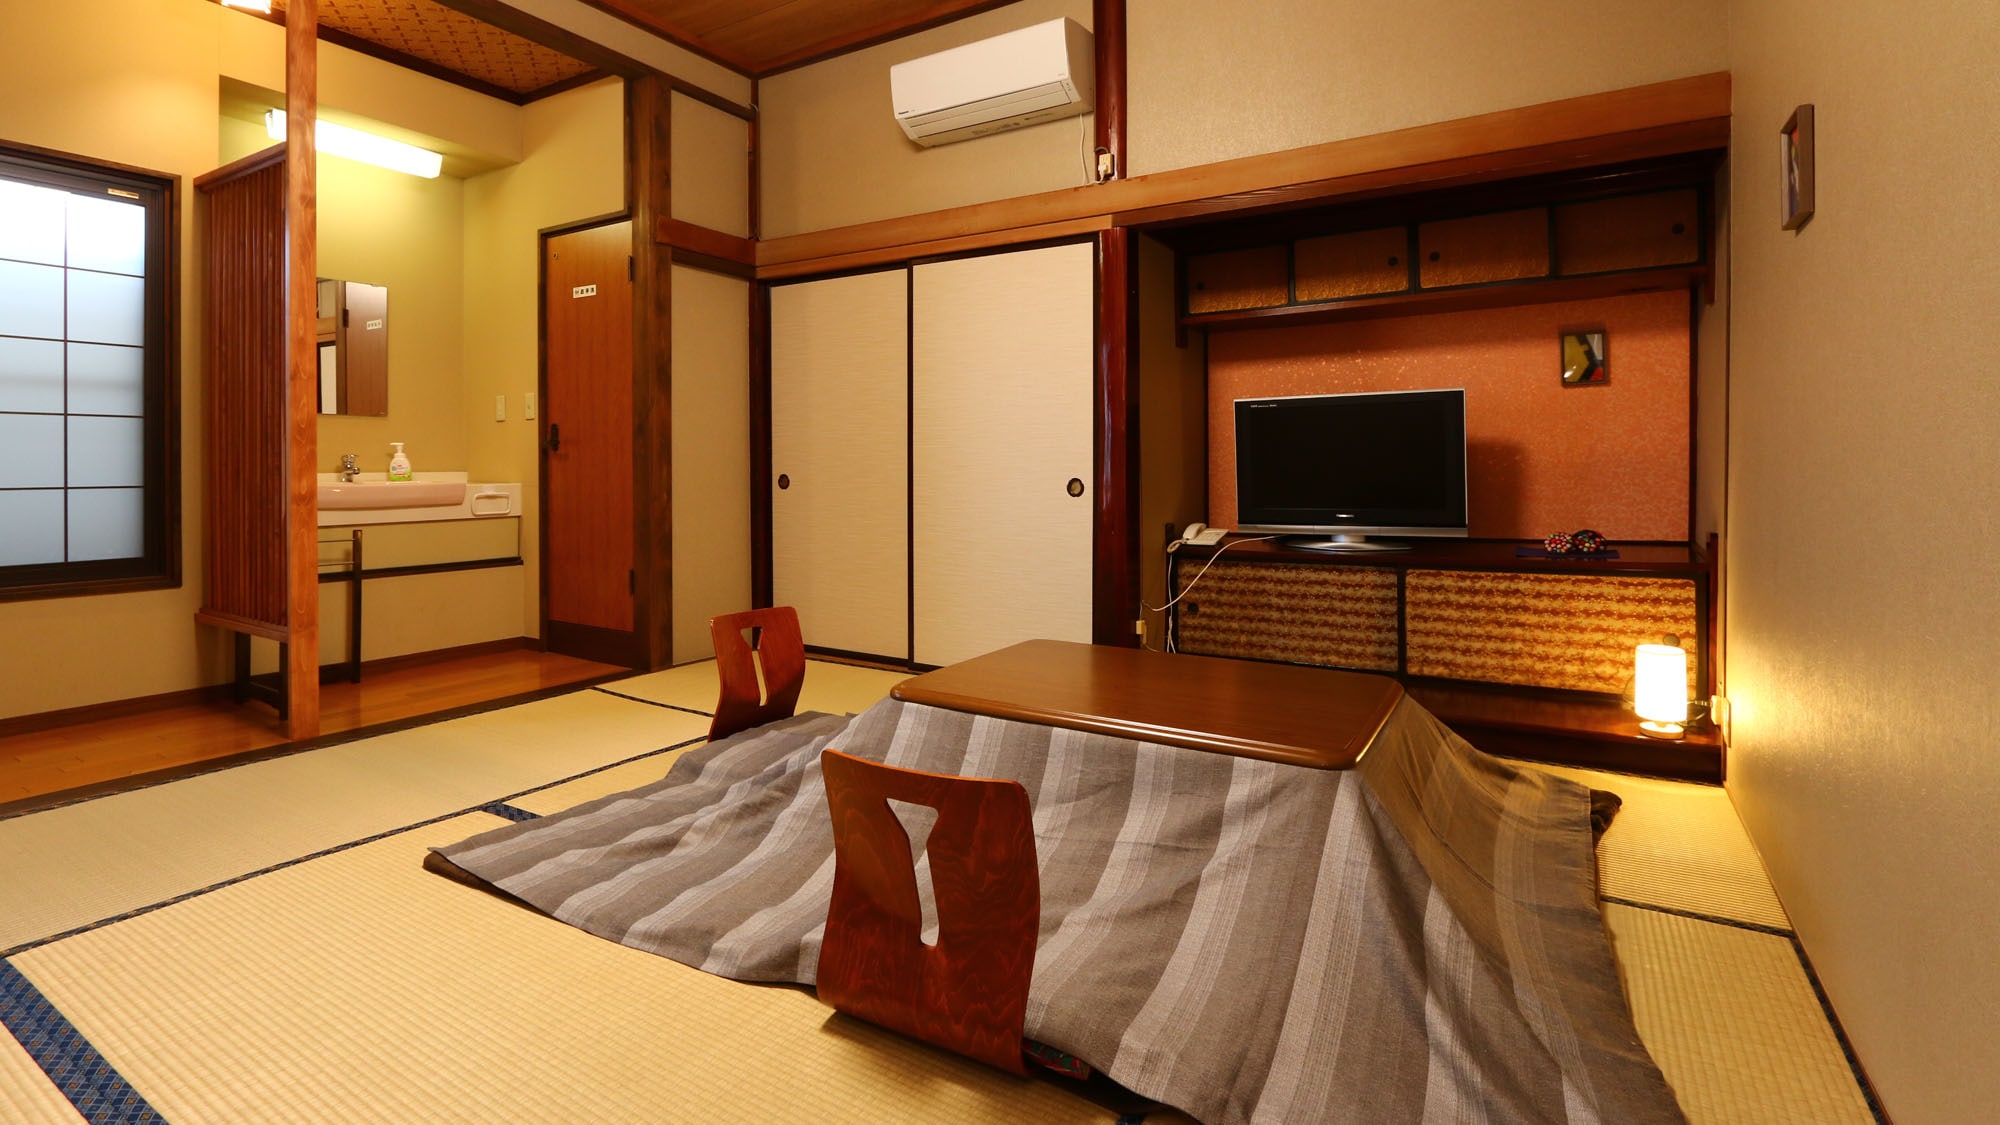 ห้องพักสไตล์ญี่ปุ่น (ห้องกว้างขวางและเงียบสงบ) ห้องพักสไตล์ญี่ปุ่นพร้อมเสื่อทาทามิ 8 ผืน และสุขา*